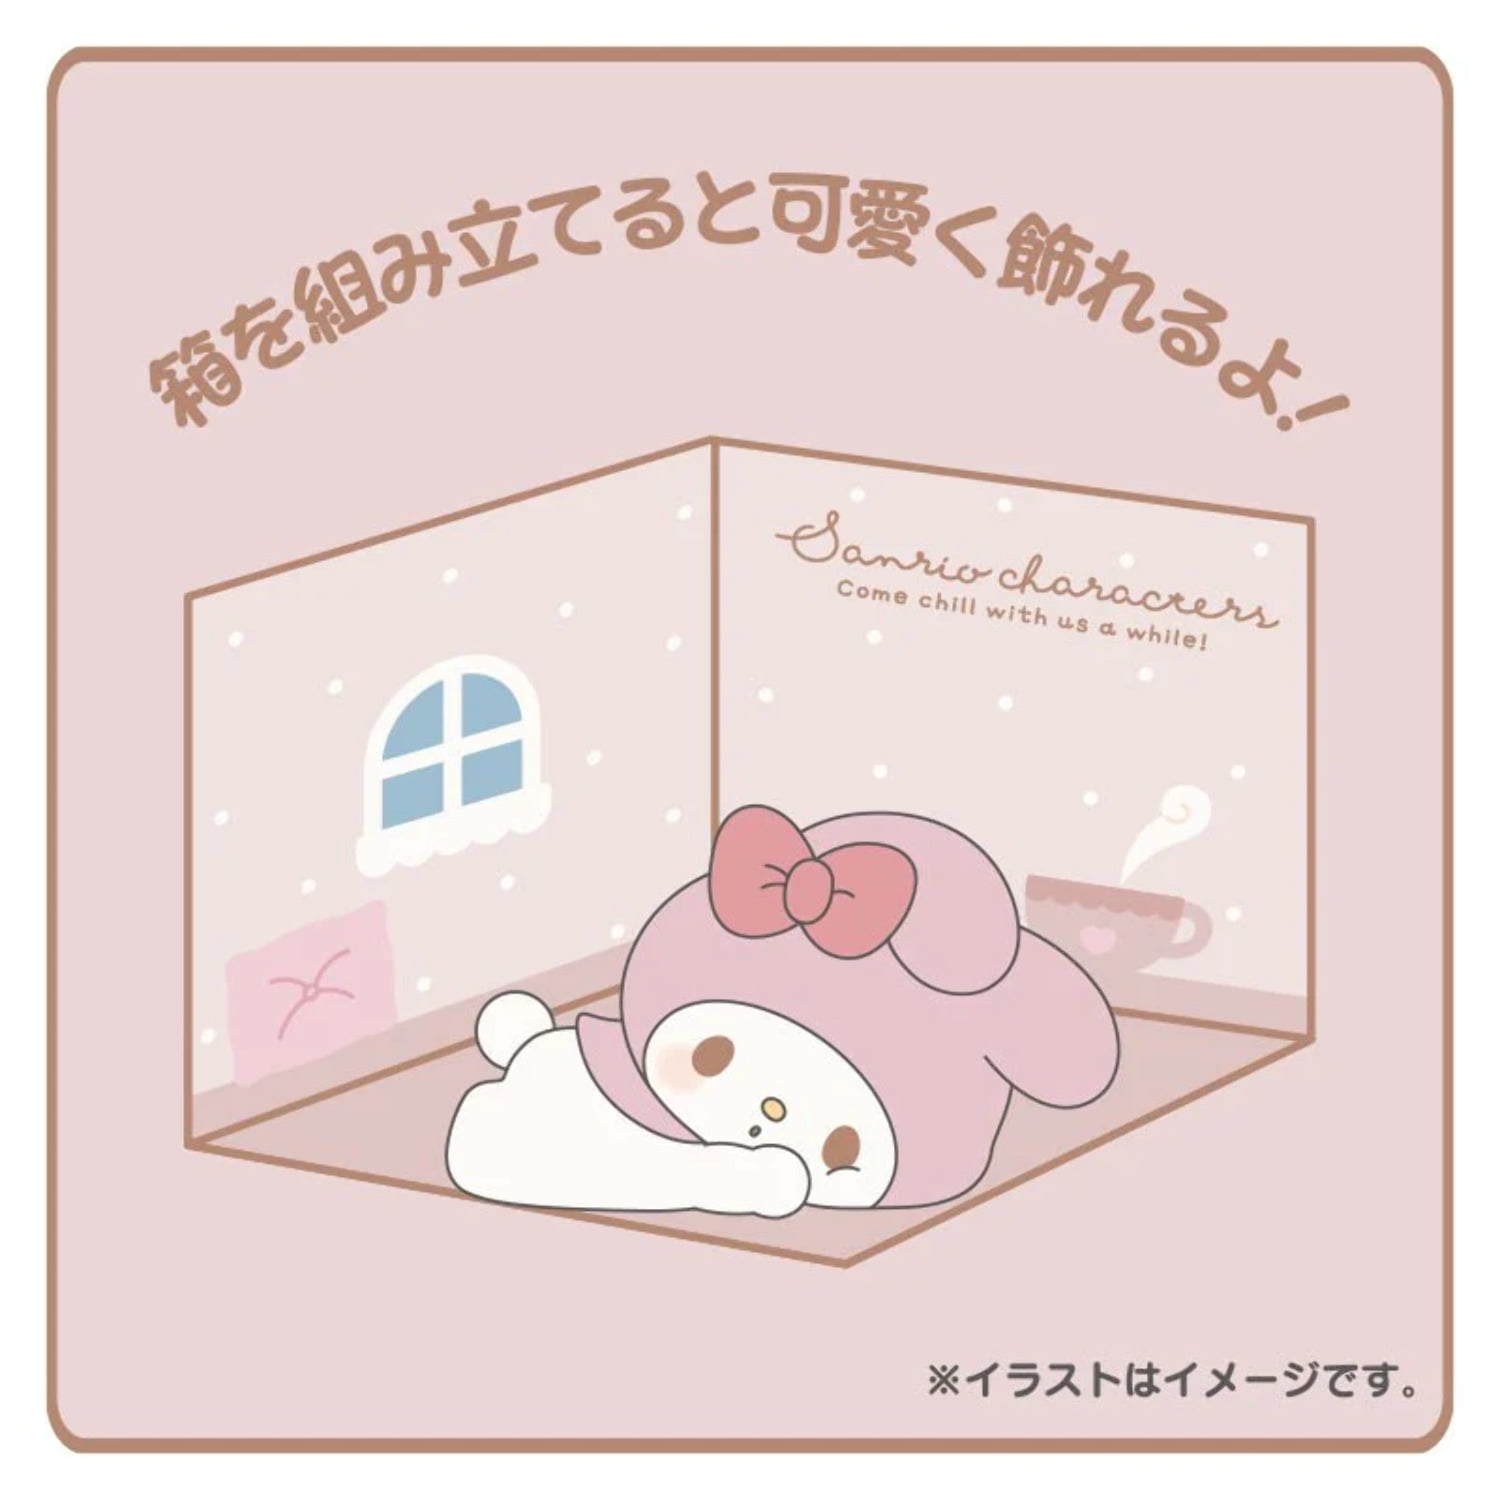 Sanrio Cinnamoroll Plush (Botto Chill Time Design) 640638 One Size